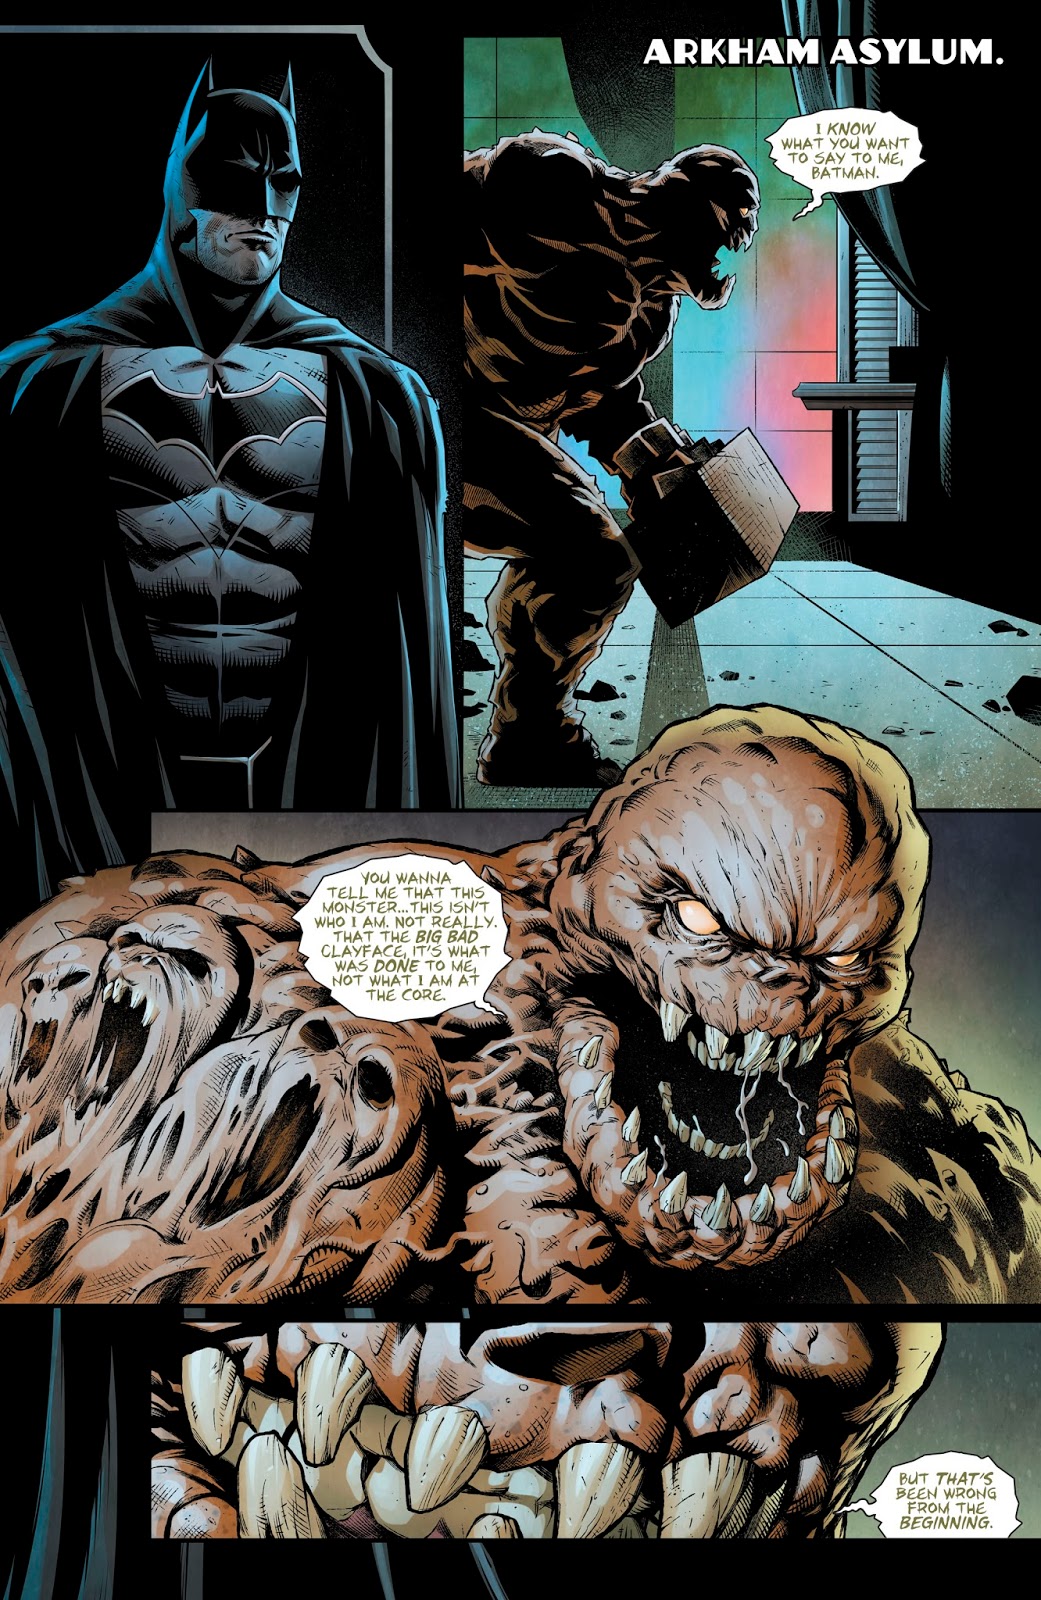 Batman VS Clayface (Detective Comics #972)